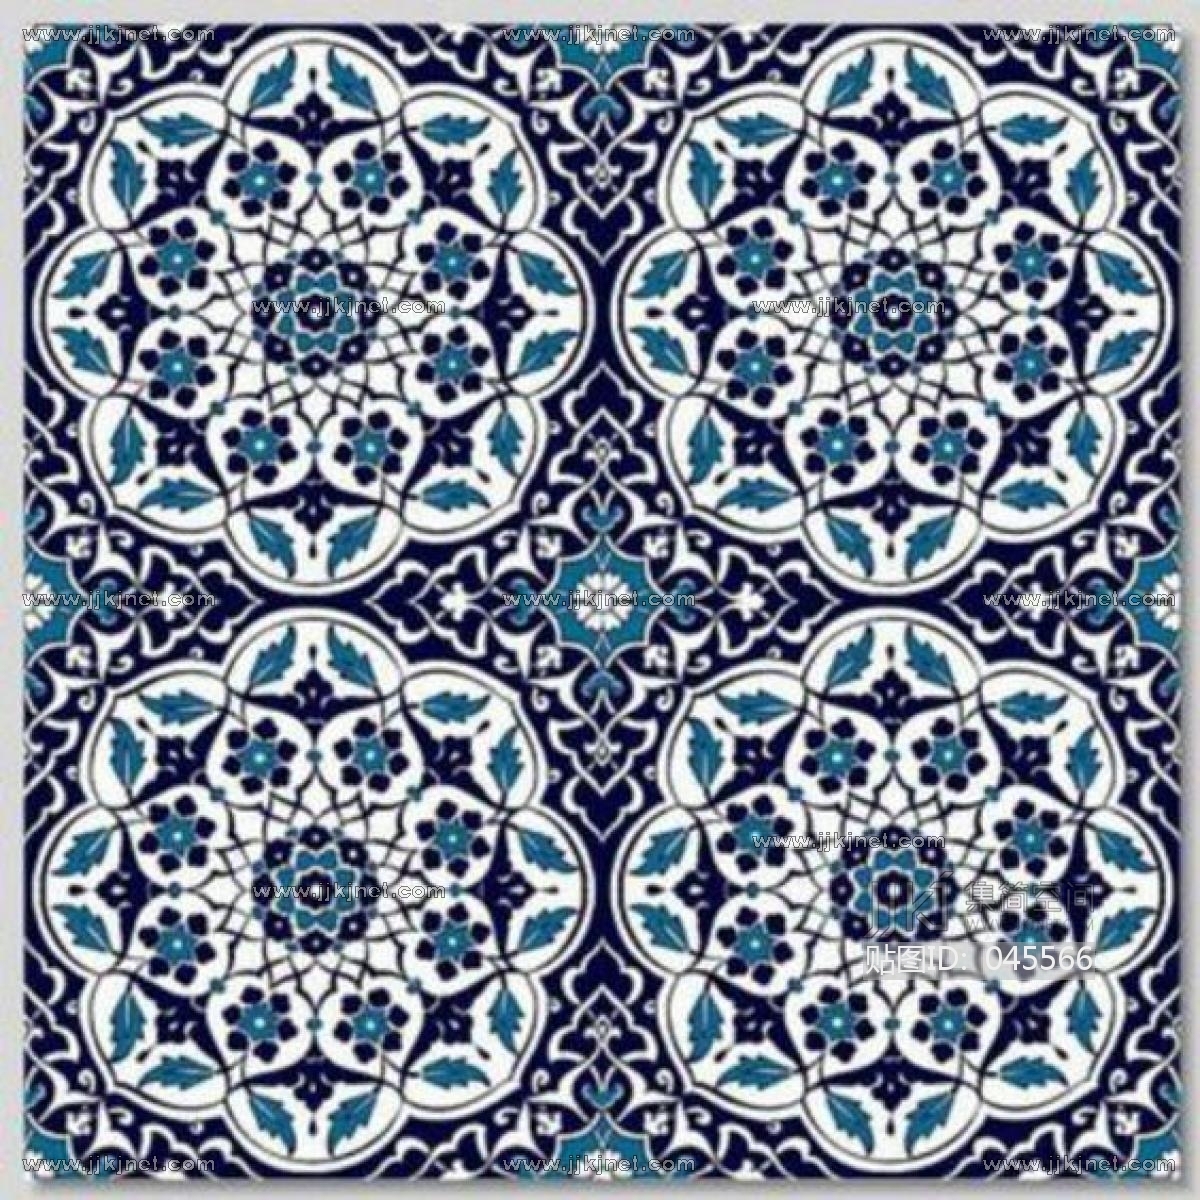 欧式地中海花纹瓷砖 (10)材质贴图下载-【集简空间】「每日更新」